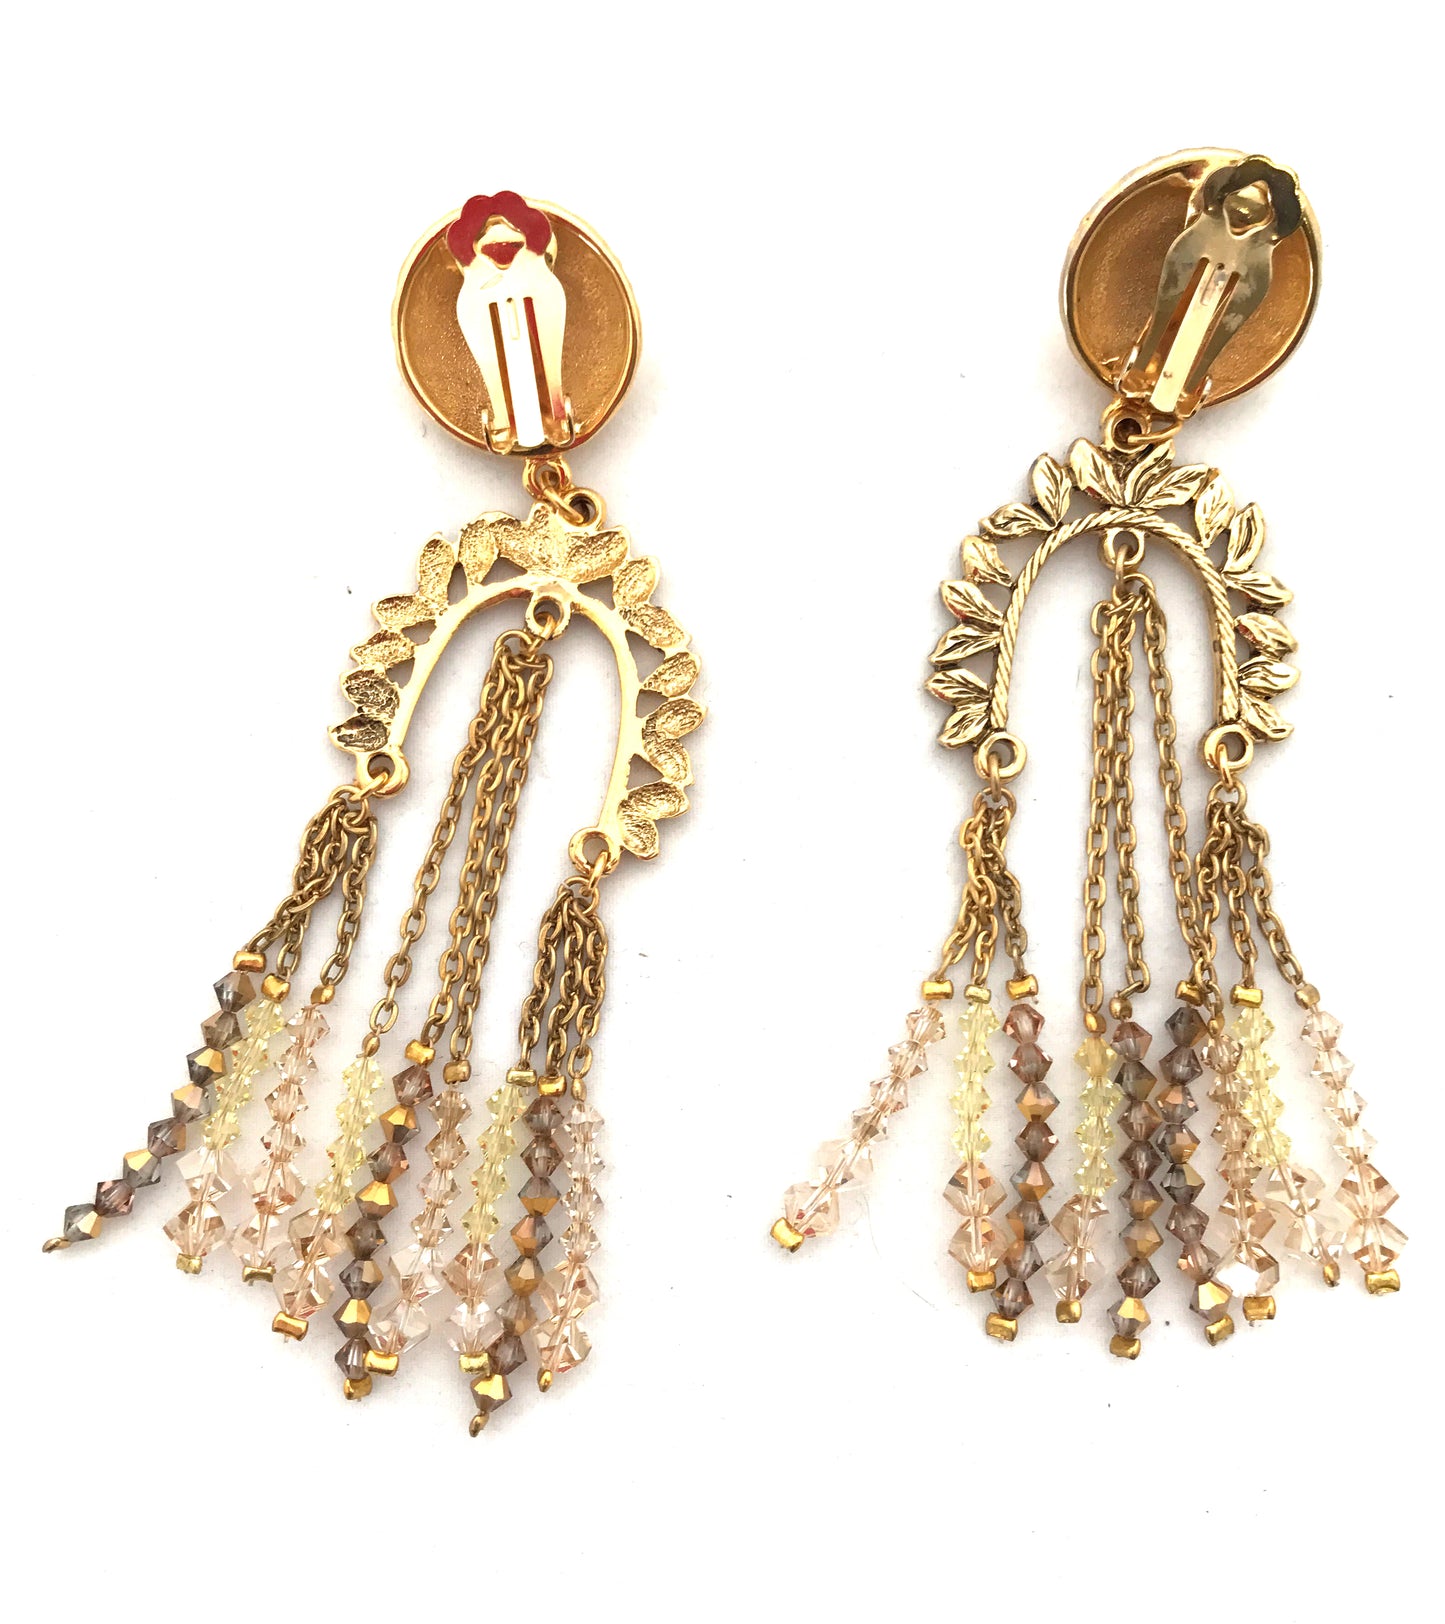 'Dynasty' earrings